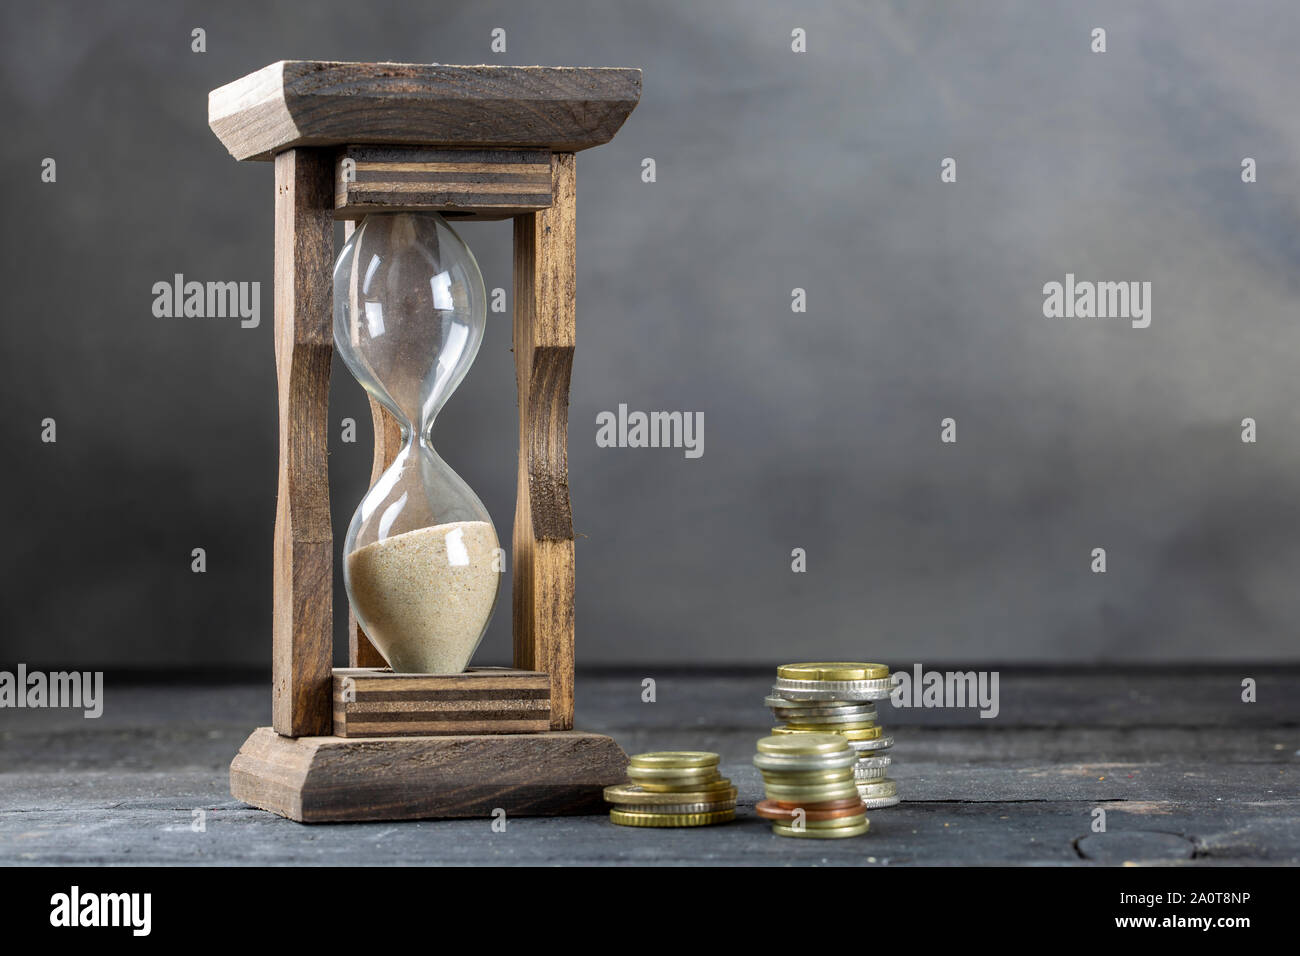 Le temps est argent concept, coin et hourglass Banque D'Images